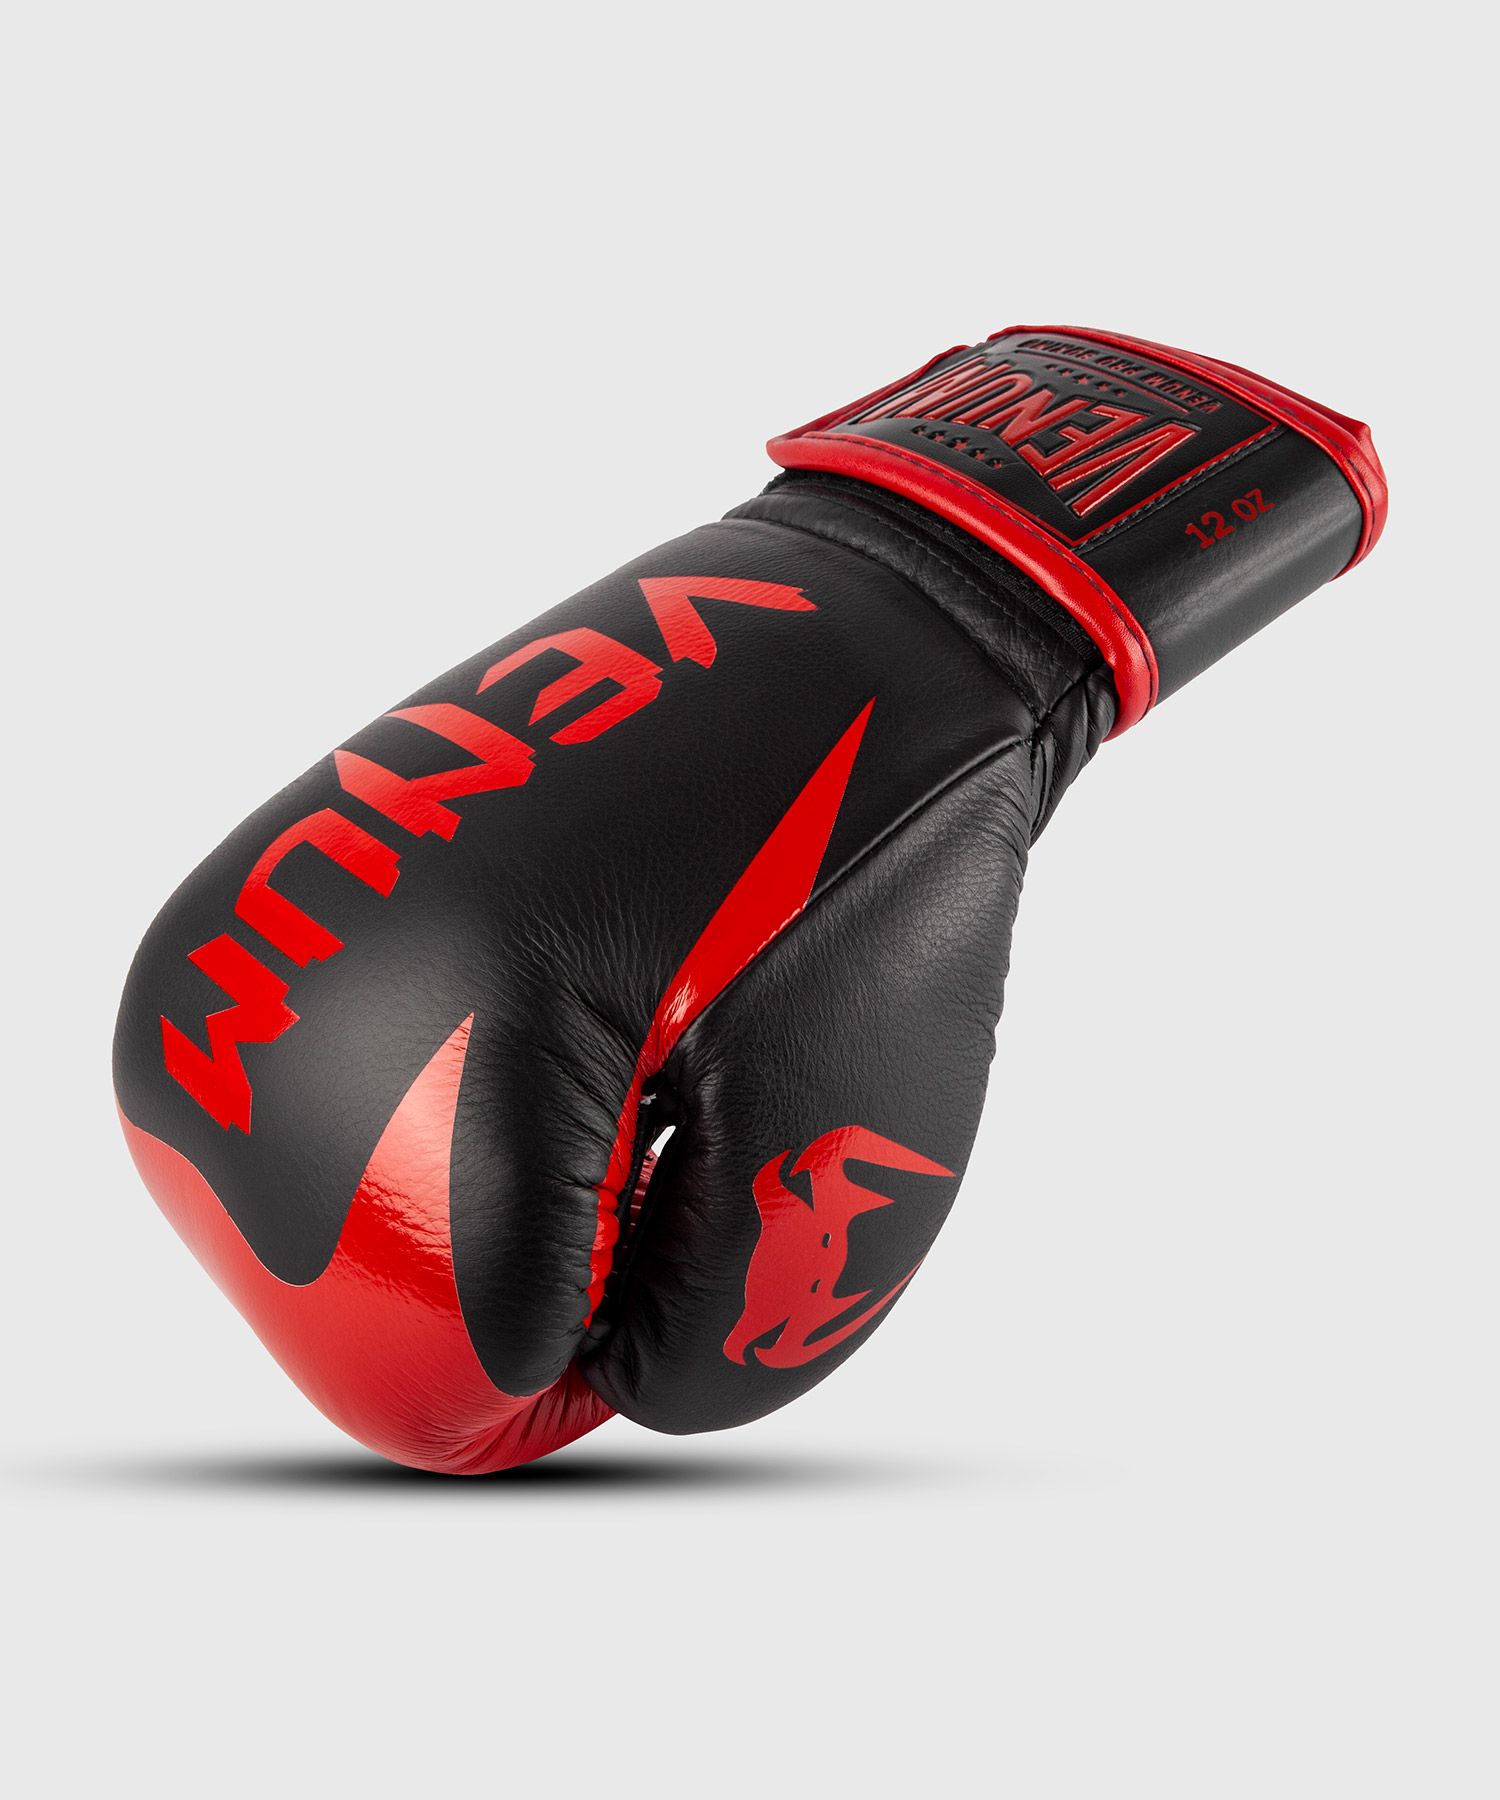 Gants de boxe pro Venum Hammer - Velcro - Noir/Rouge